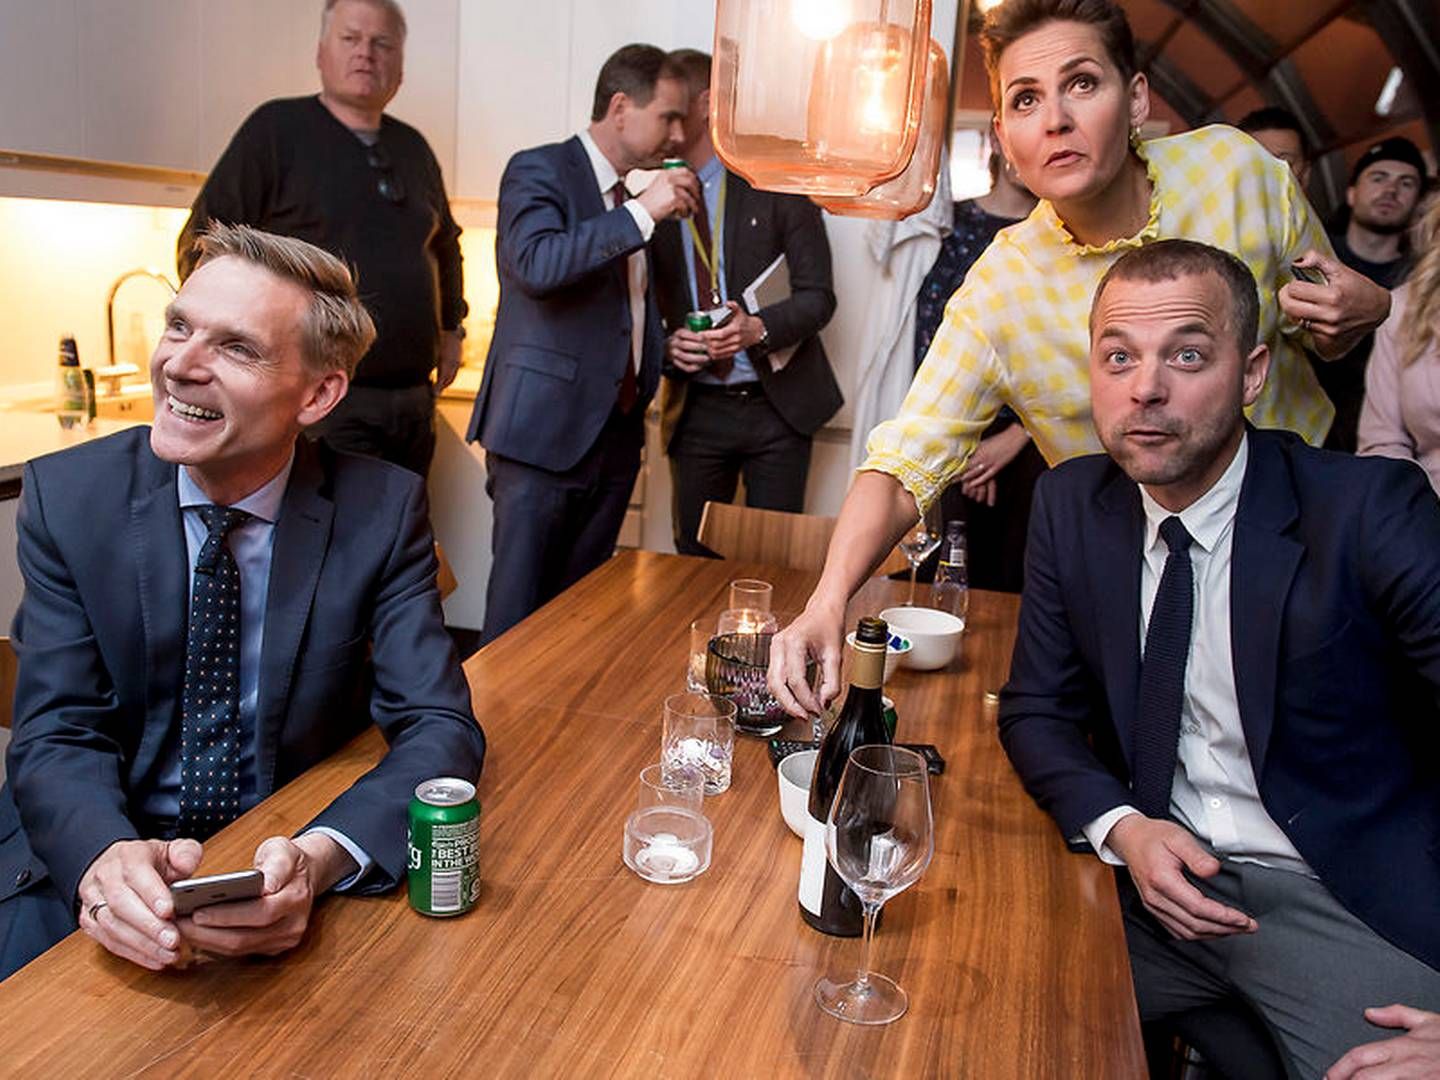 Partiledere samlet hos TV 2 på Hovedbanegården efter partilederdebat tirsdag aften. | Foto: Mads Claus Rasmussen/Ritzau Scanpix